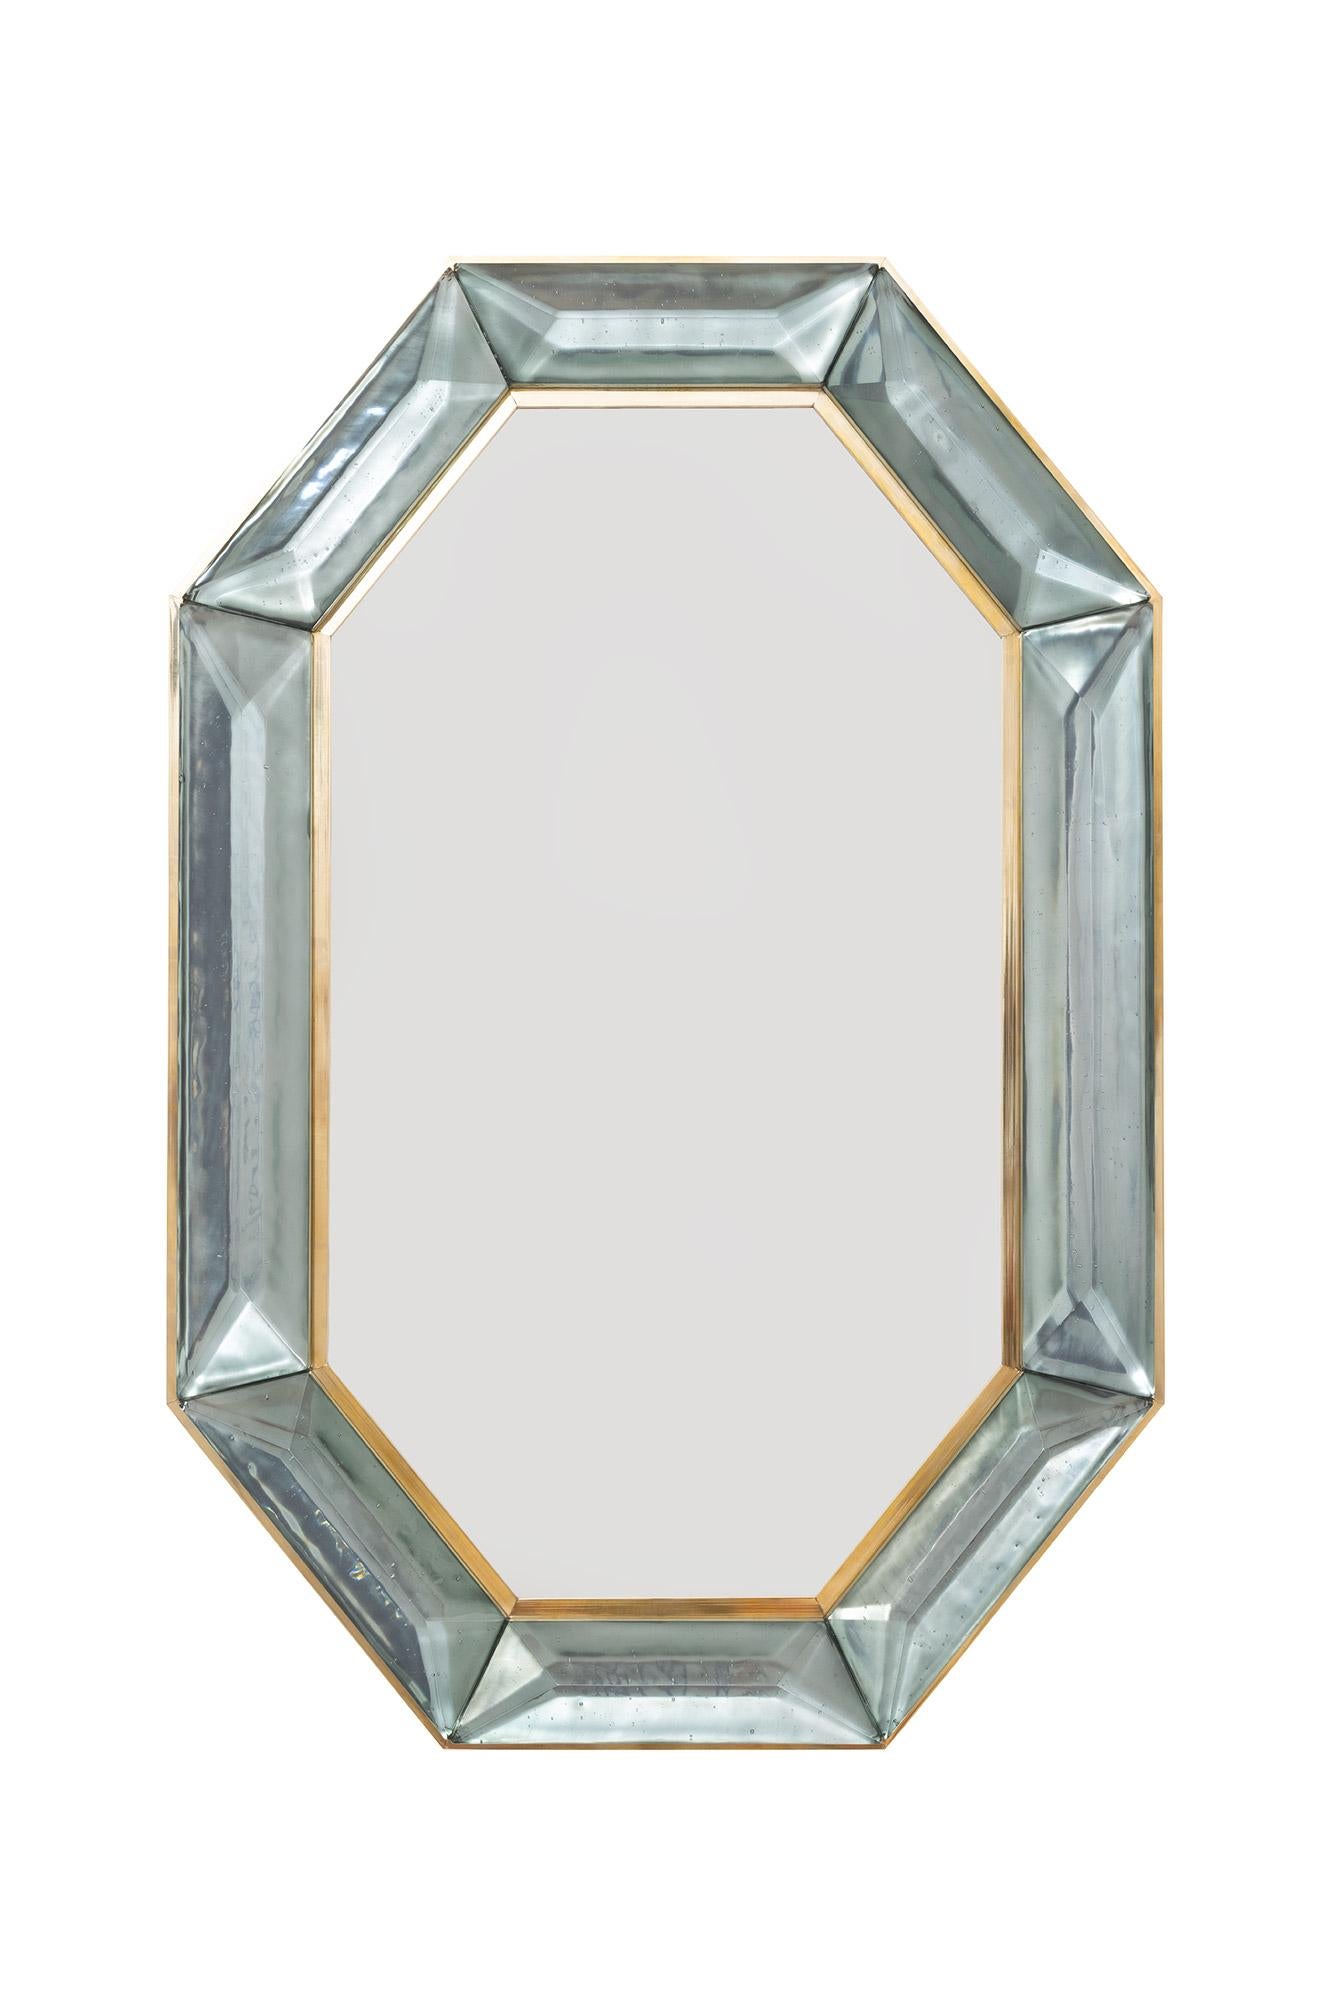 Paire de miroirs octogonaux sur mesure en verre de Murano vert de mer, en stock
Bloc de verre vert de mer vif et intense avec des inclusions d'air d'origine naturelle.
Motif à facettes hautement poli
(a) Gallery Gallery tout autour
Chaque miroir est